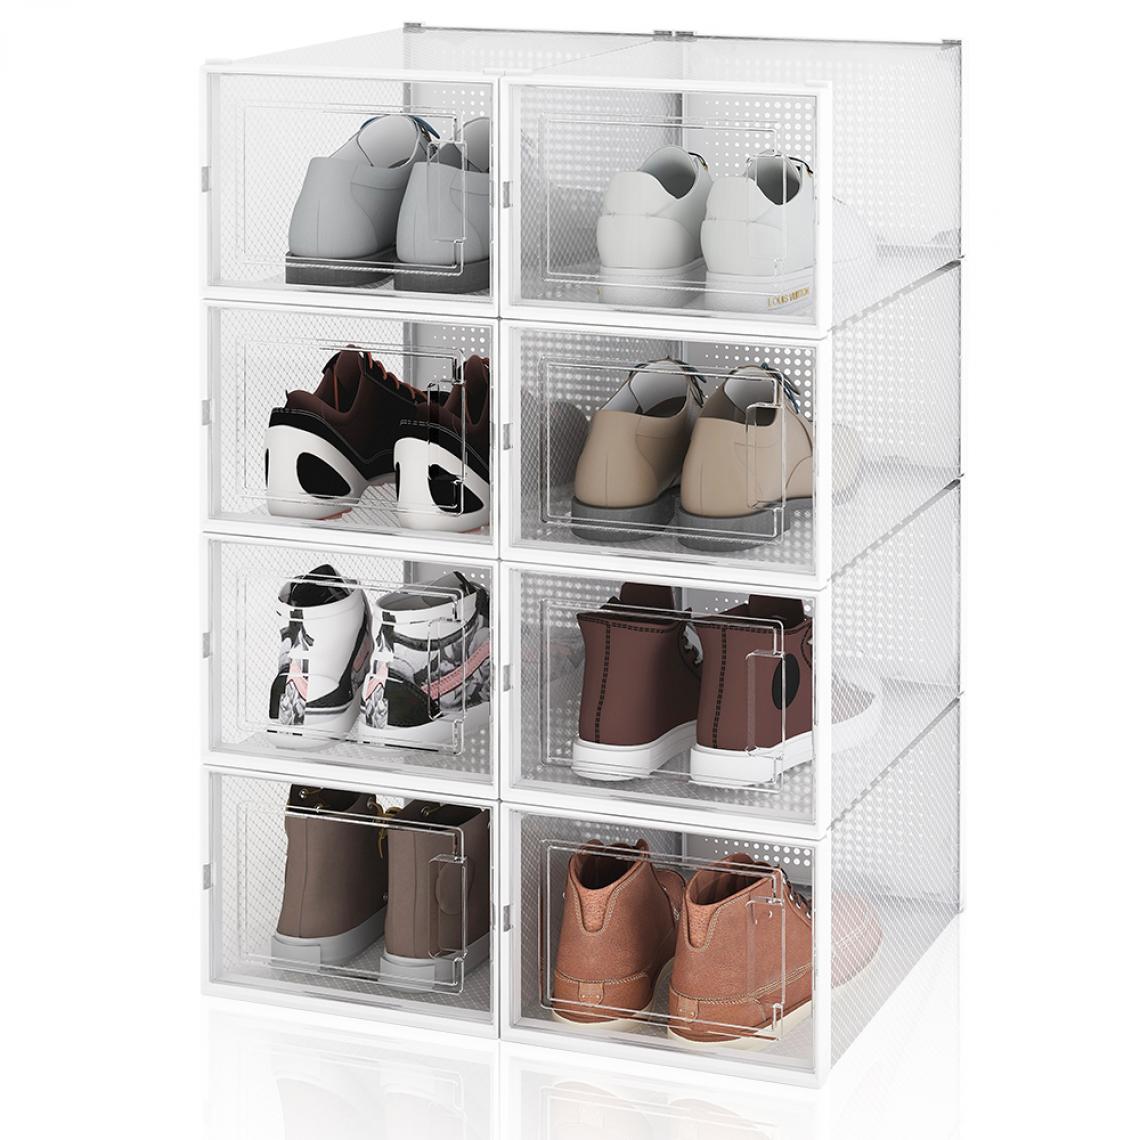 Einfeben - Boîte à chaussures Transparentes en Plastique, Boîte Rangement Chaussures, Etagère à Chaussures,L,Lot de 8 - Rangements à chaussures